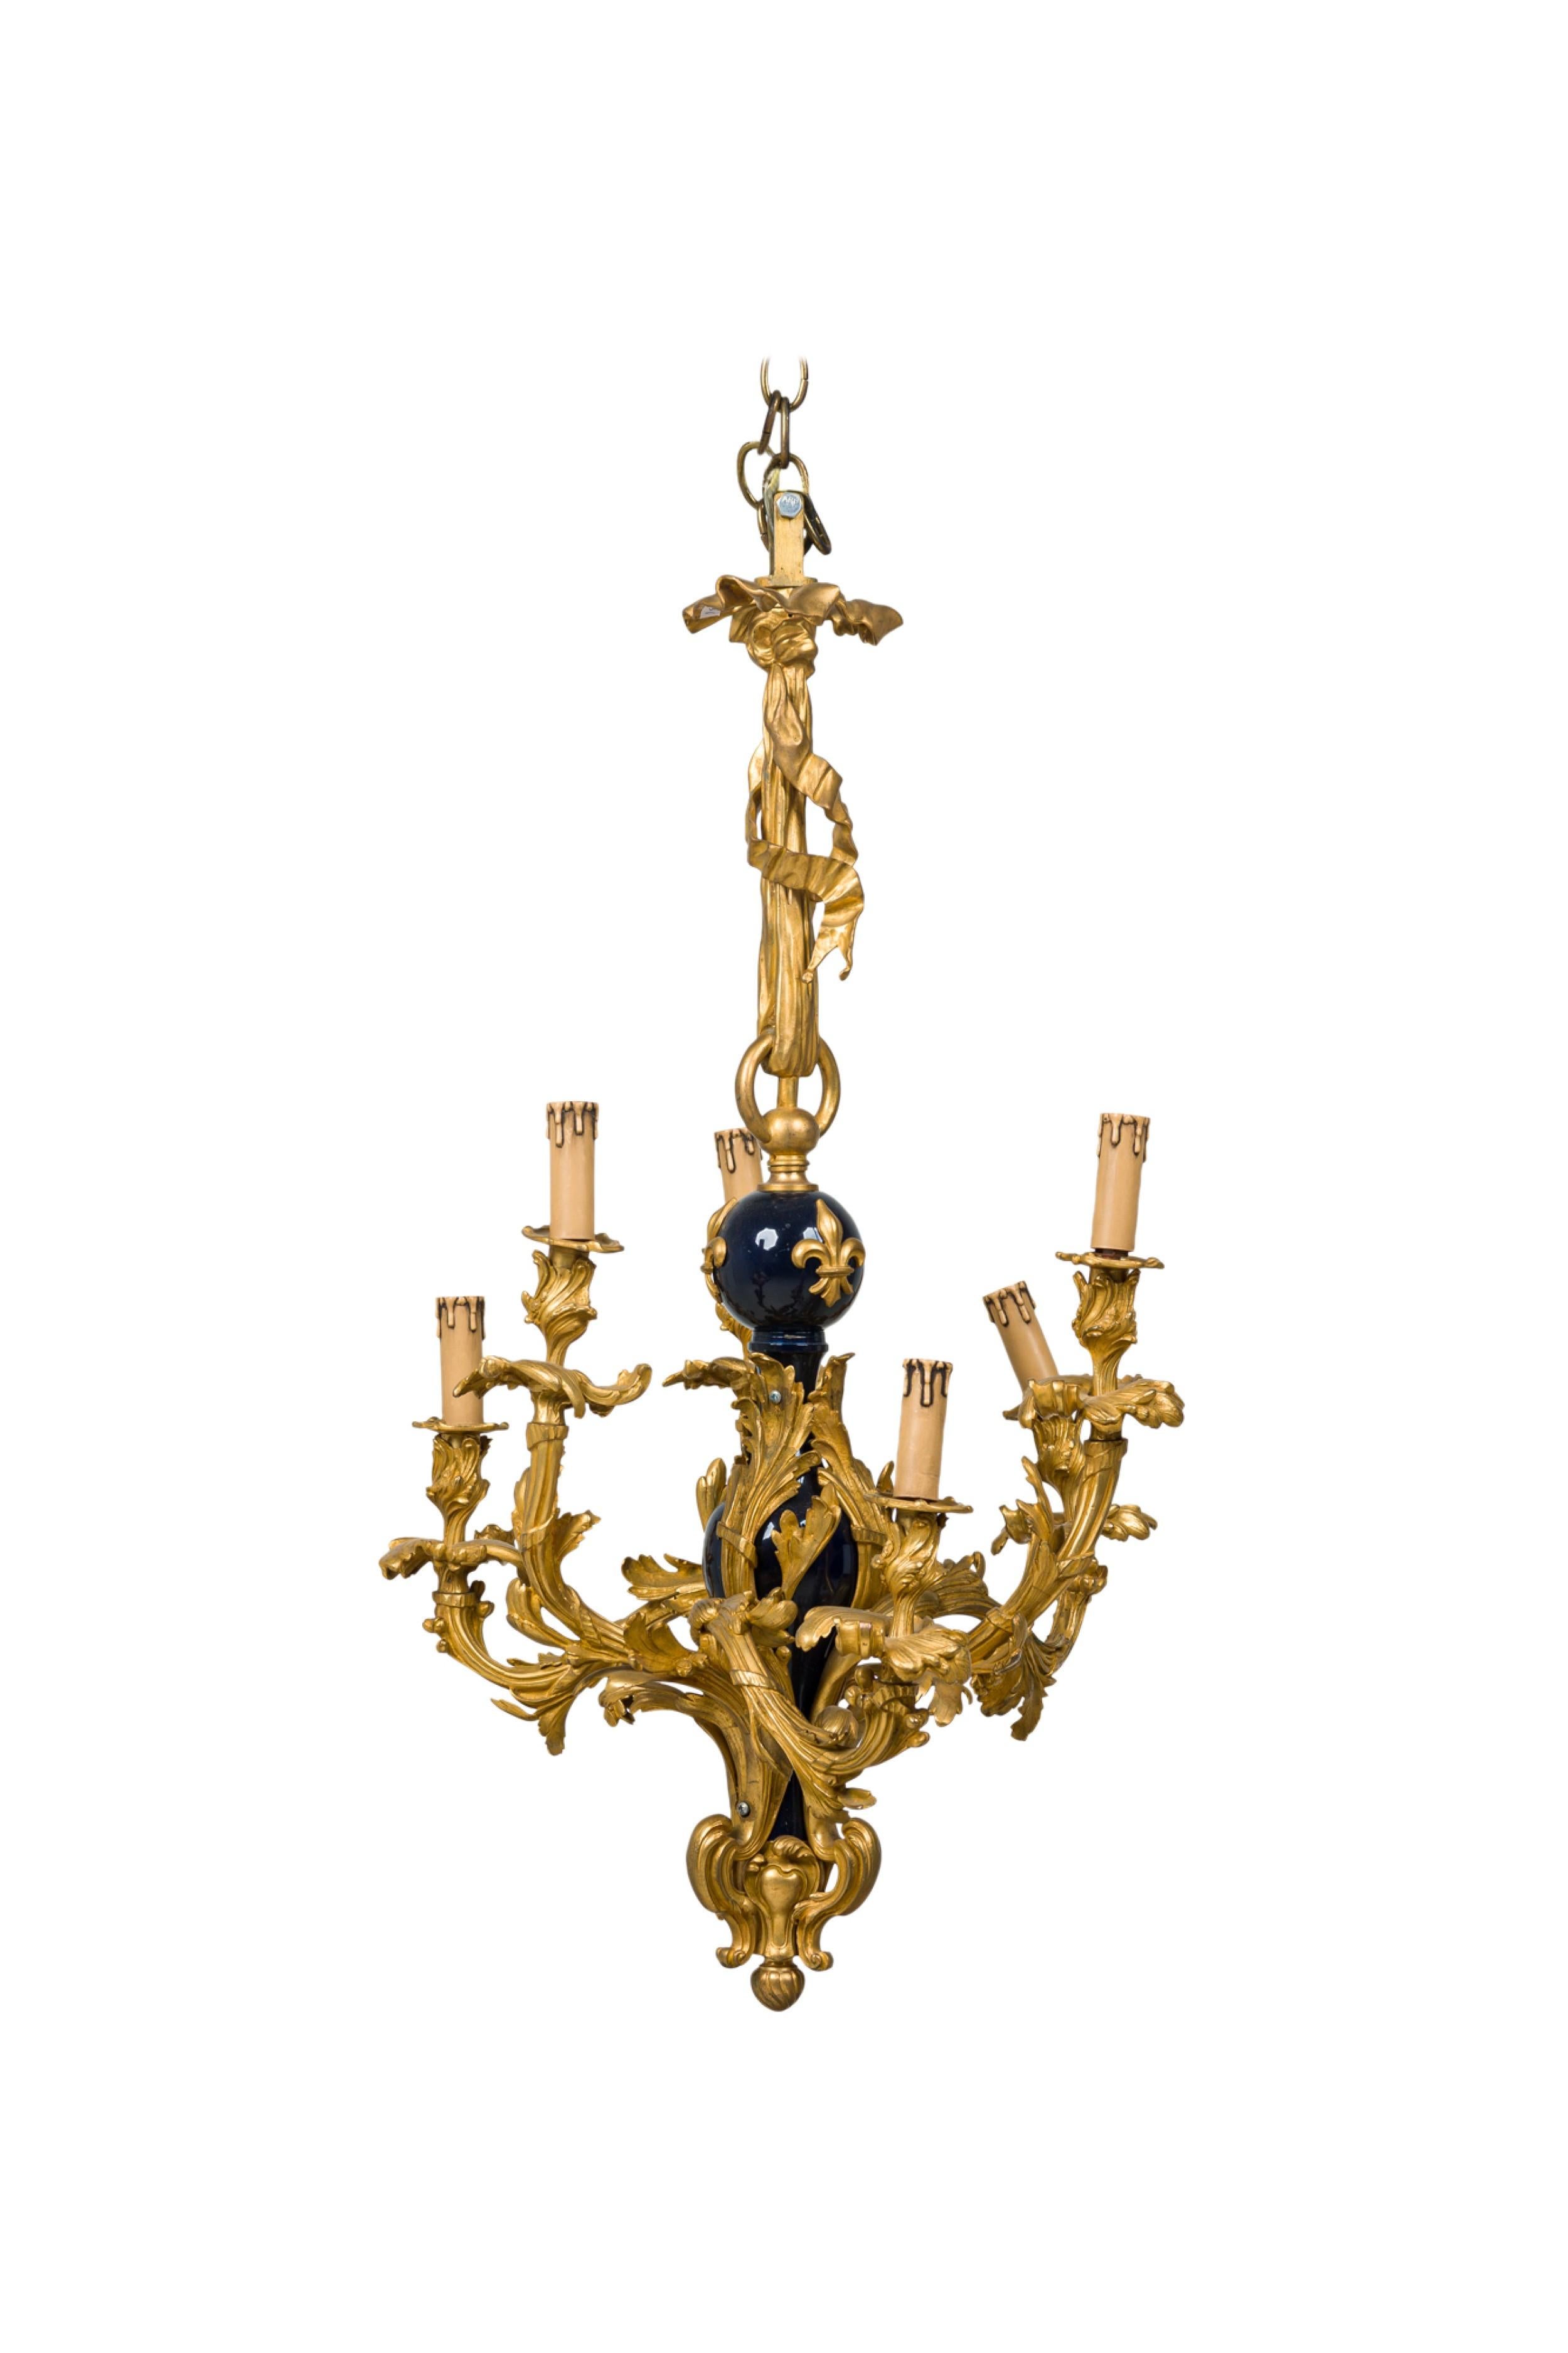 Französischer 8-armiger Kronleuchter aus Bronze im Louis XV-Stil (19. Jh.) mit einem barocken Rahmen in Form einer Schnecke und einem skulpturalen Korpus aus Kobaltporzellan mit 3 aufgesetzten Fleur de lis-Dekorationen aus Bronze in der Mitte.
